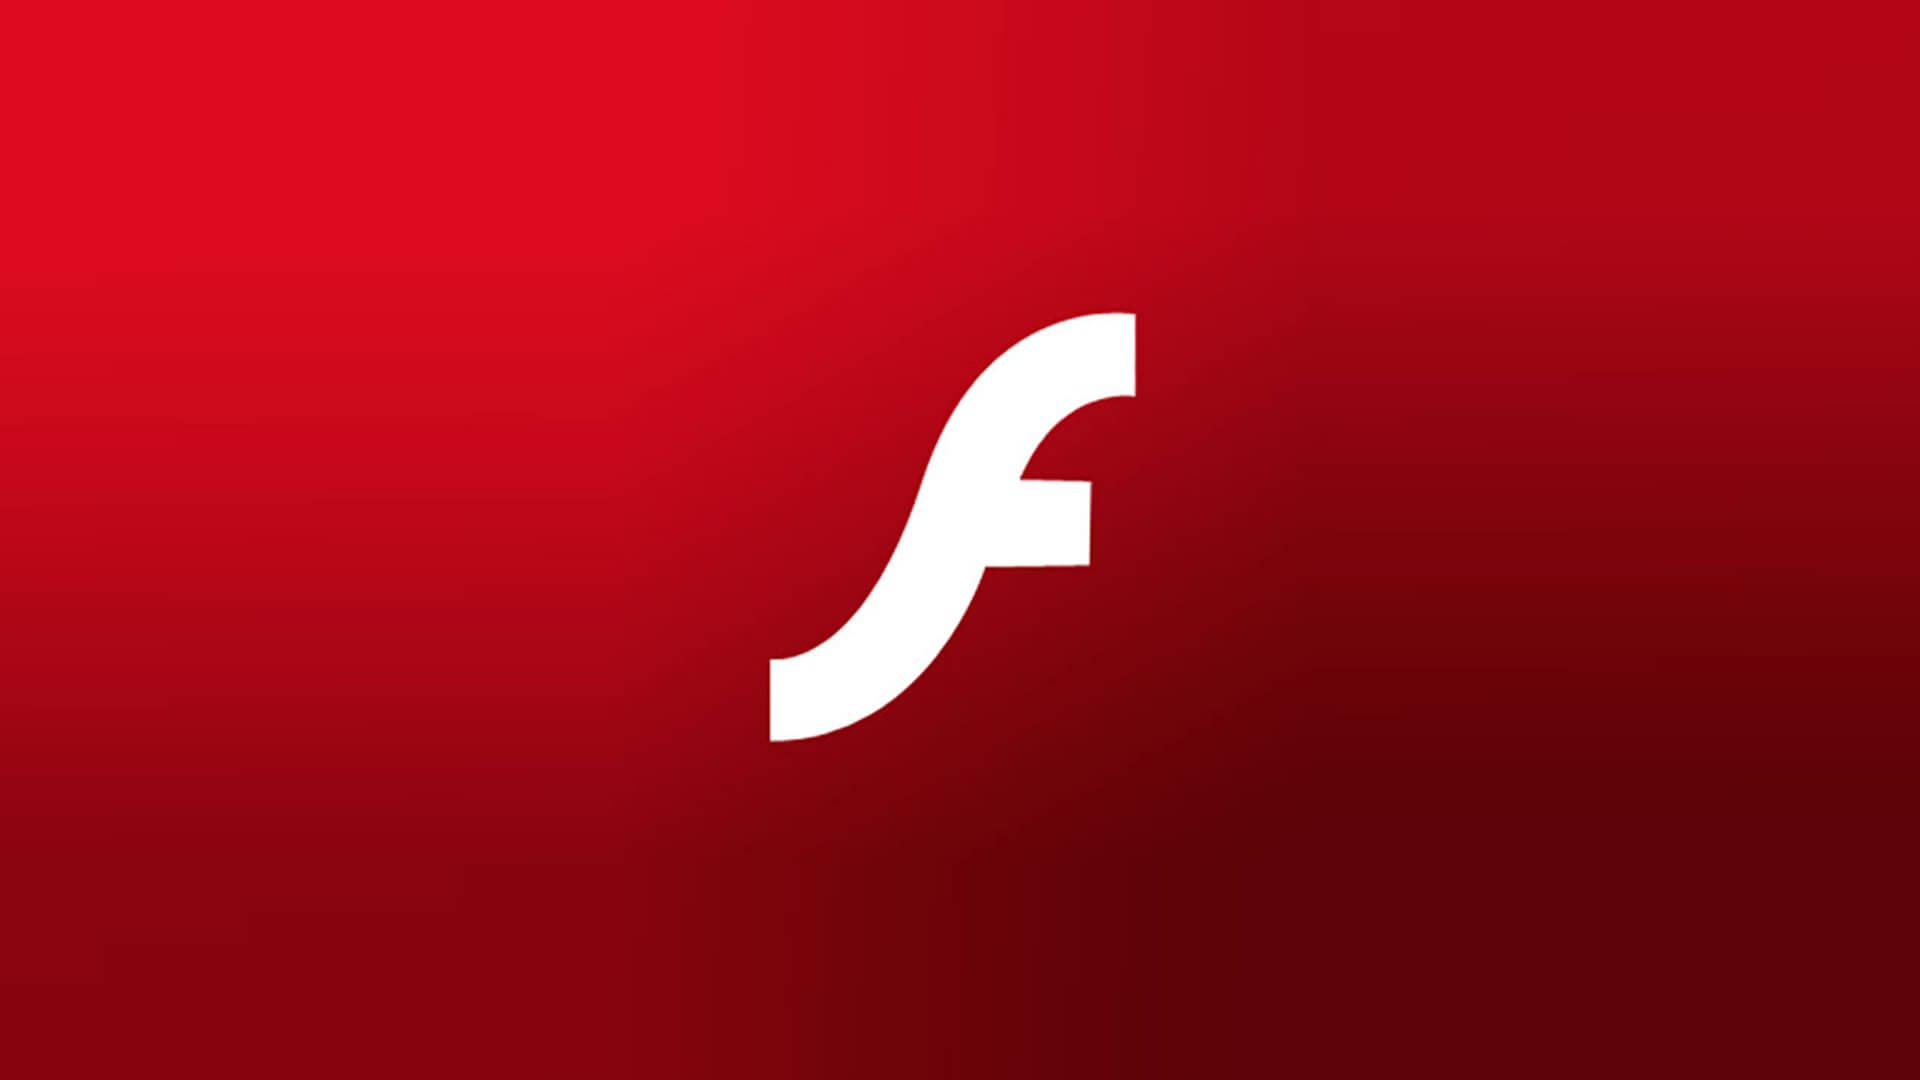 Flash Player Gratis